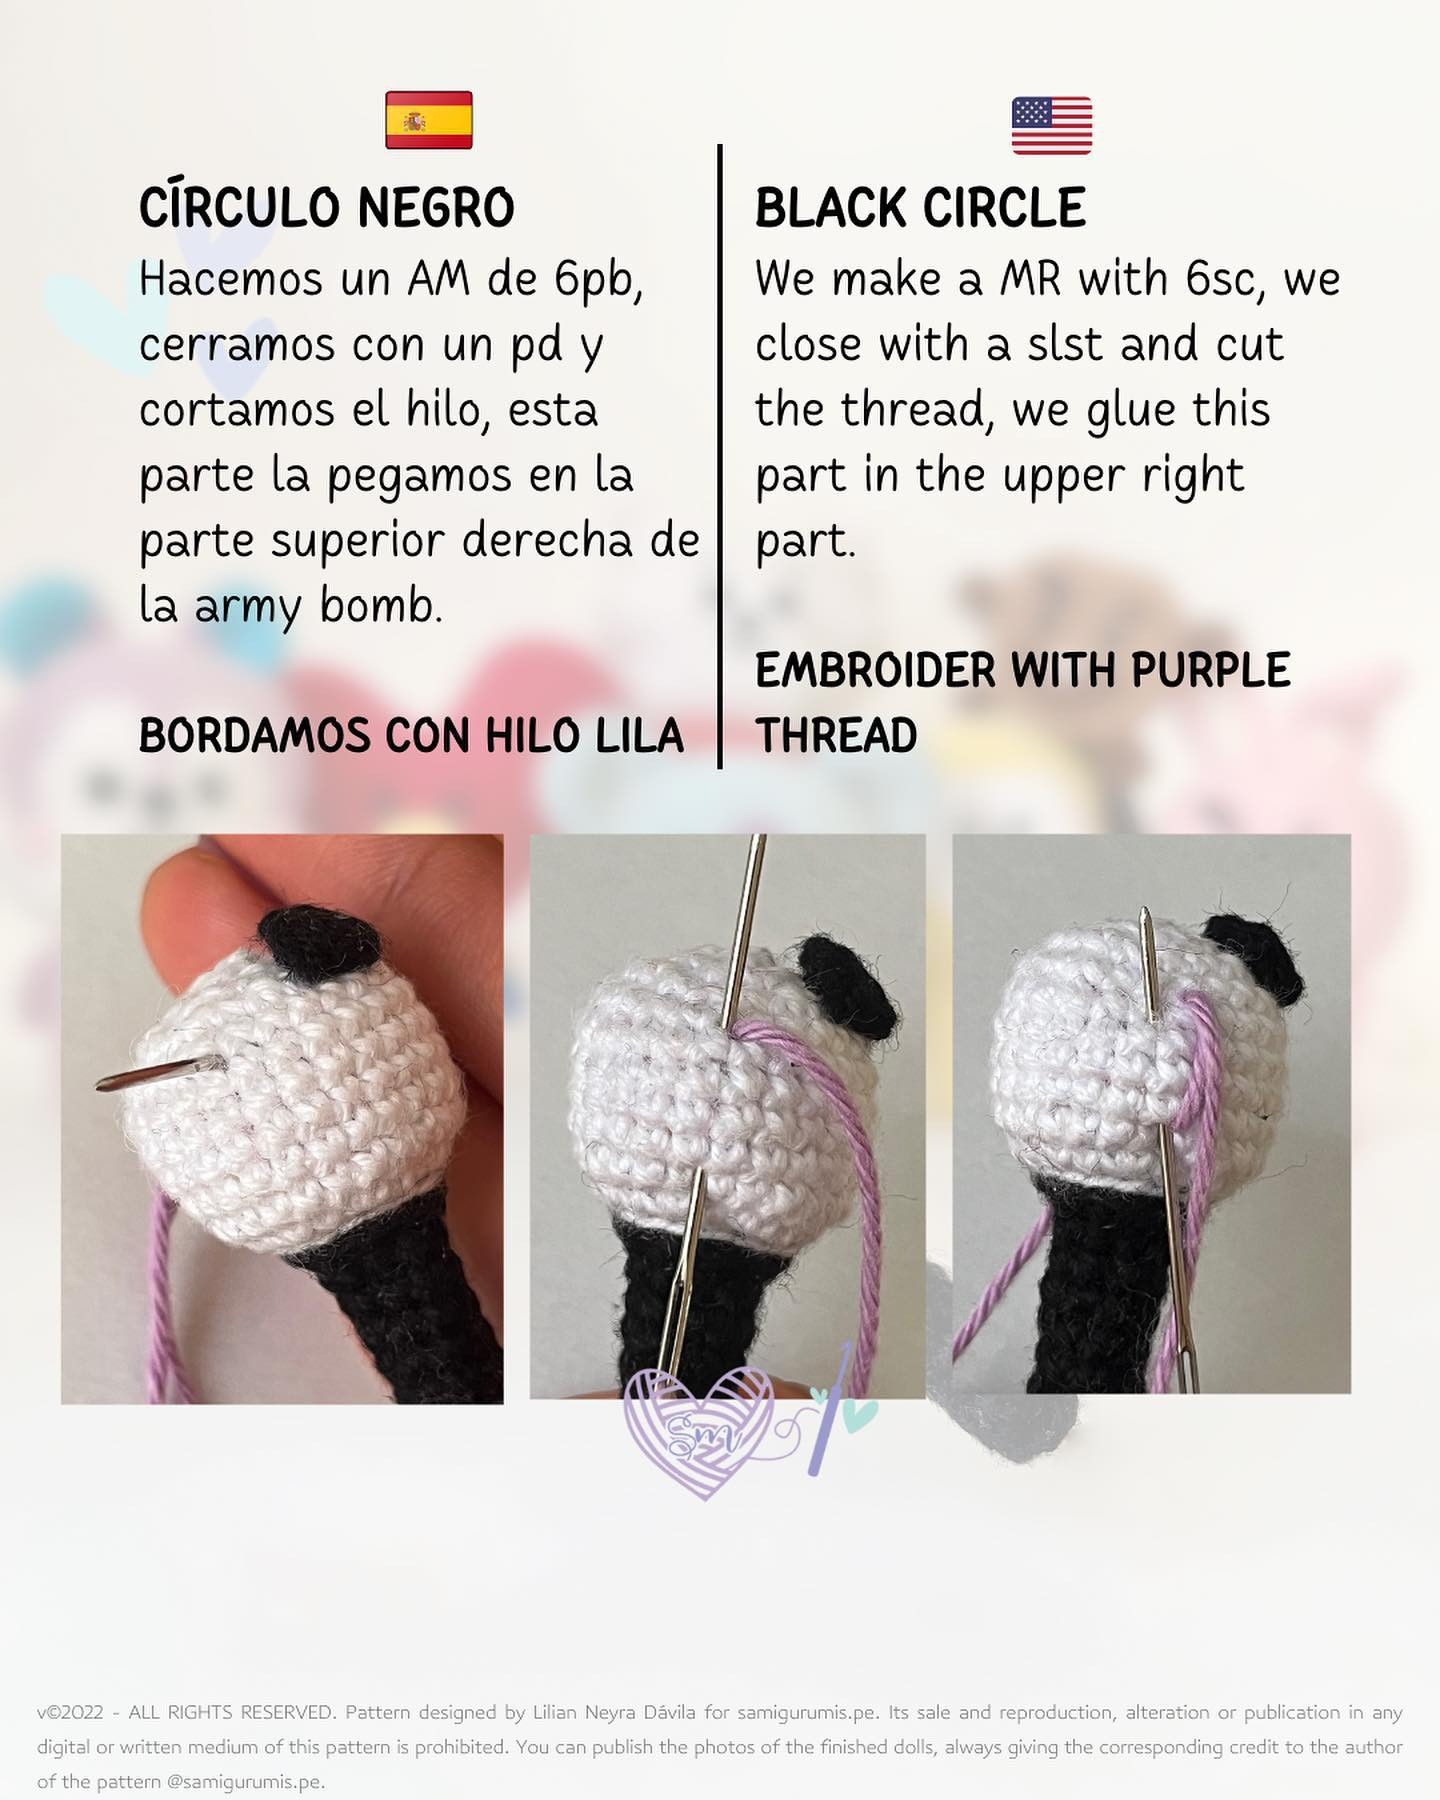 free crochet pattern mini army bomb